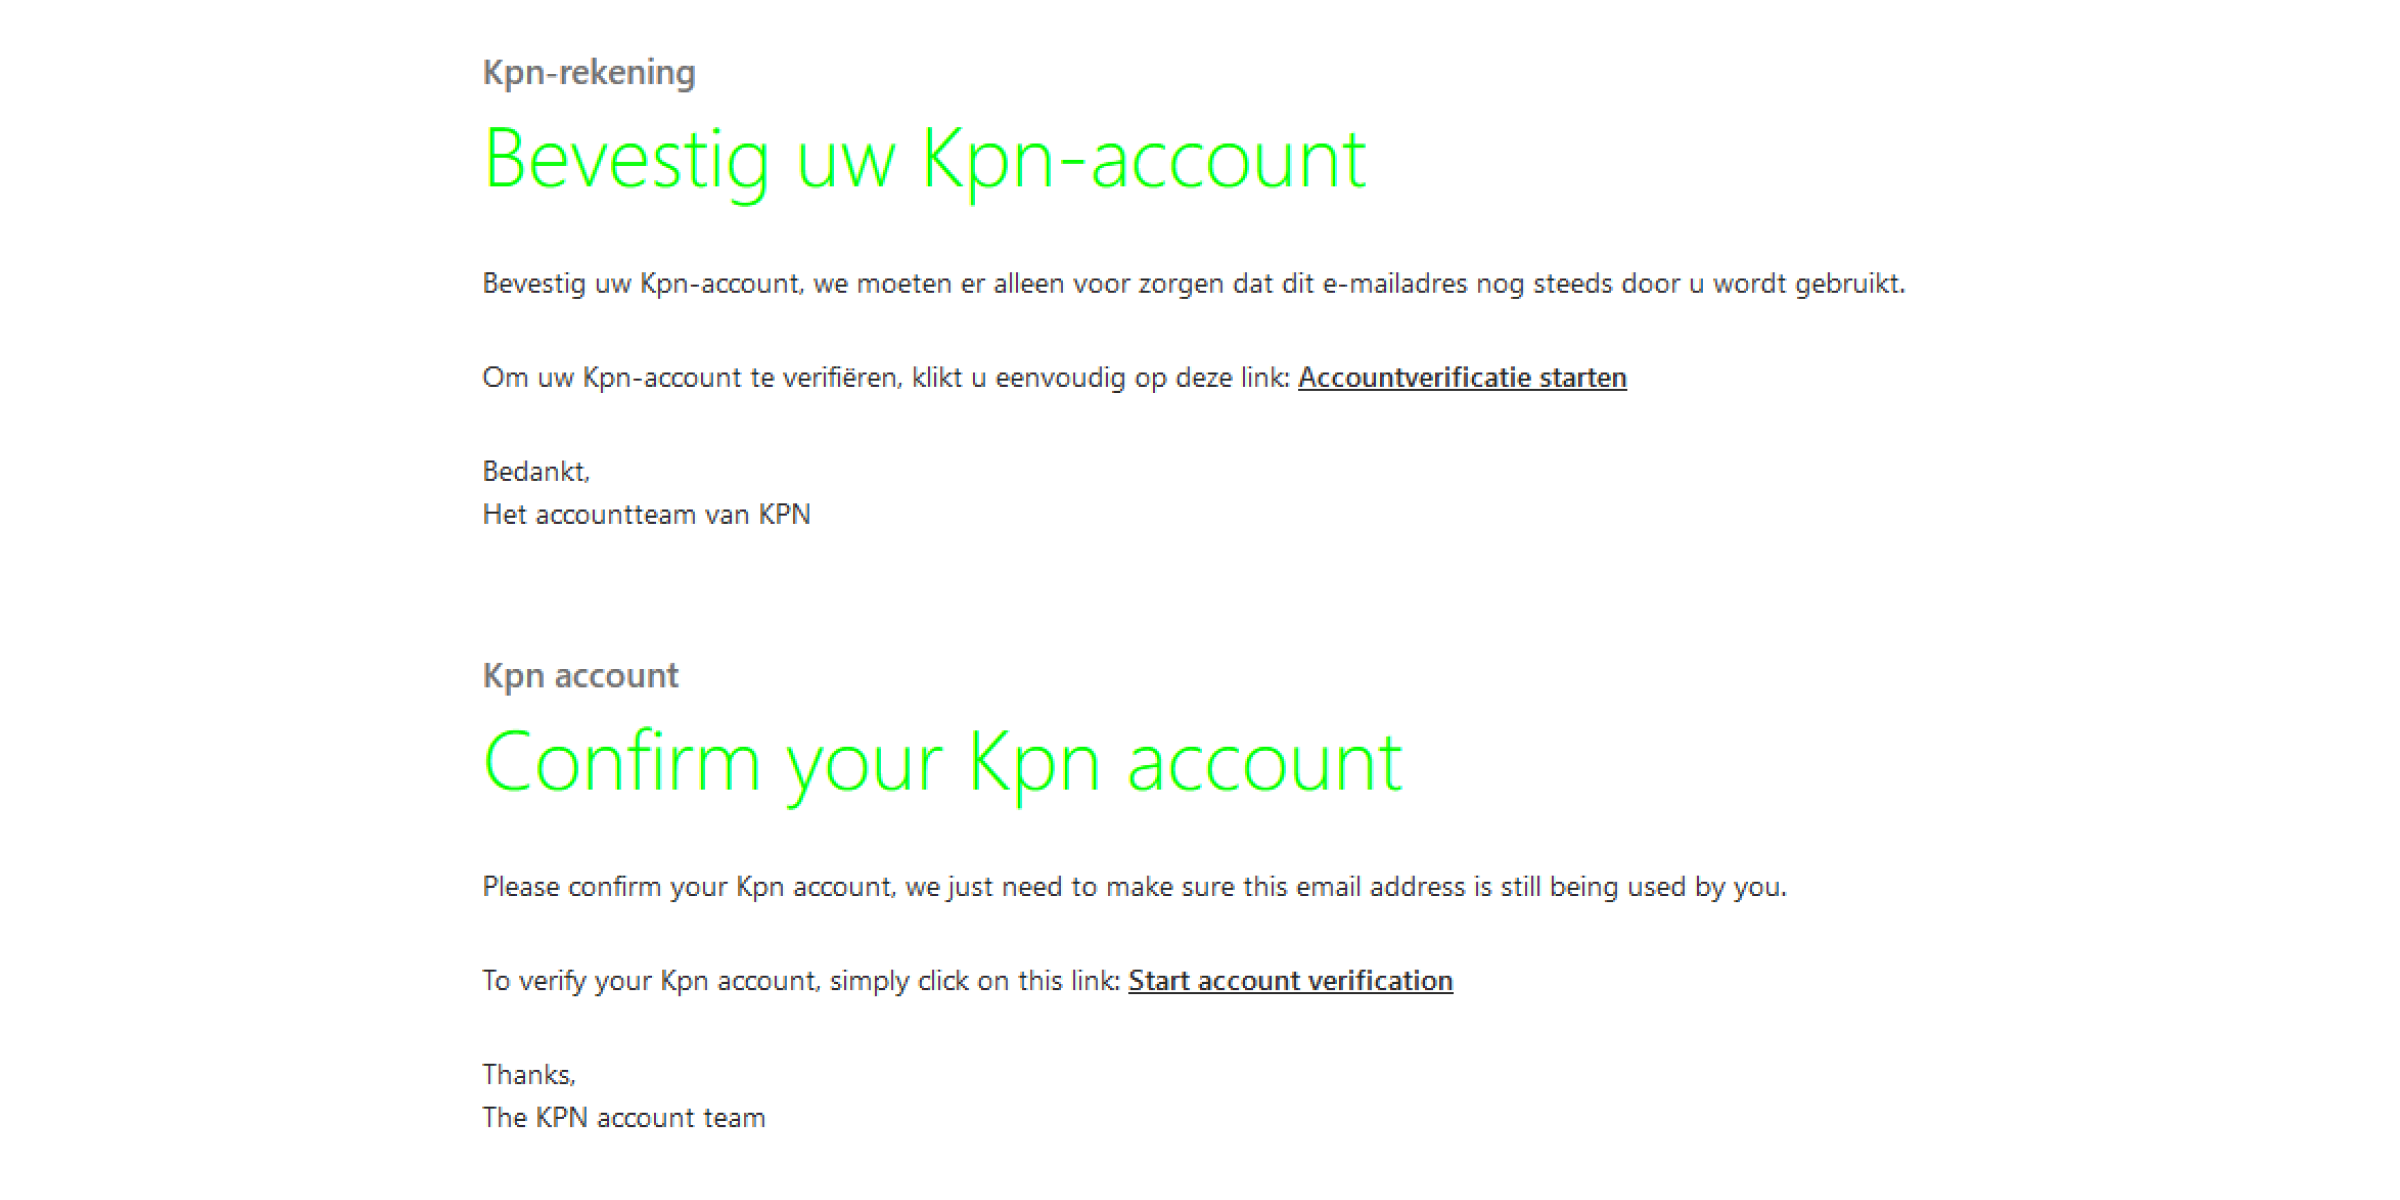 Voorbeeld van phishing mail met onderwerp: Bevestig uw Kpn-account/Confirm your Kpn account